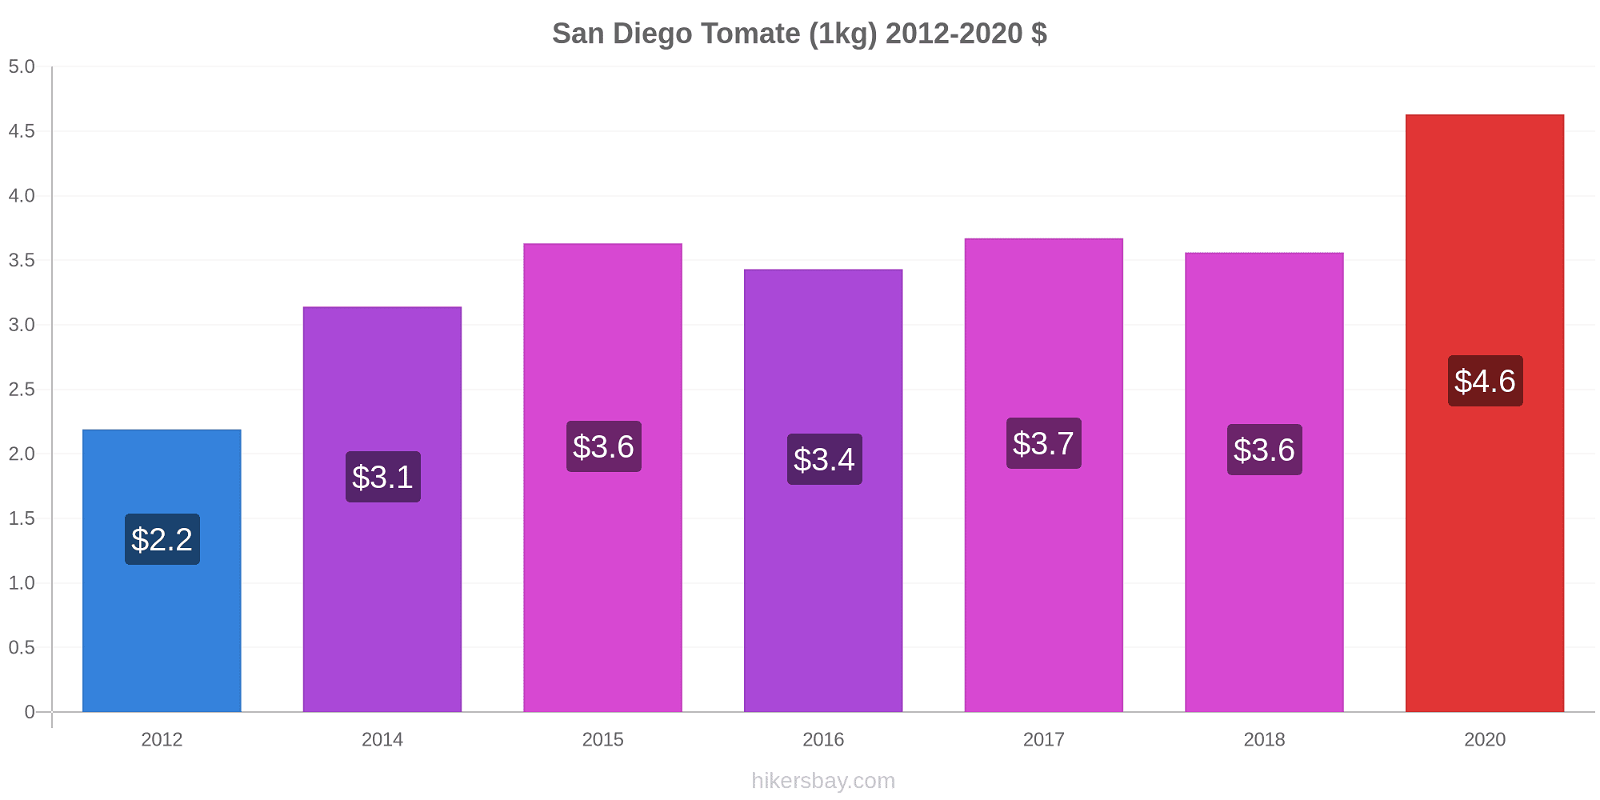 San Diego variação de preço Tomate (1kg) hikersbay.com